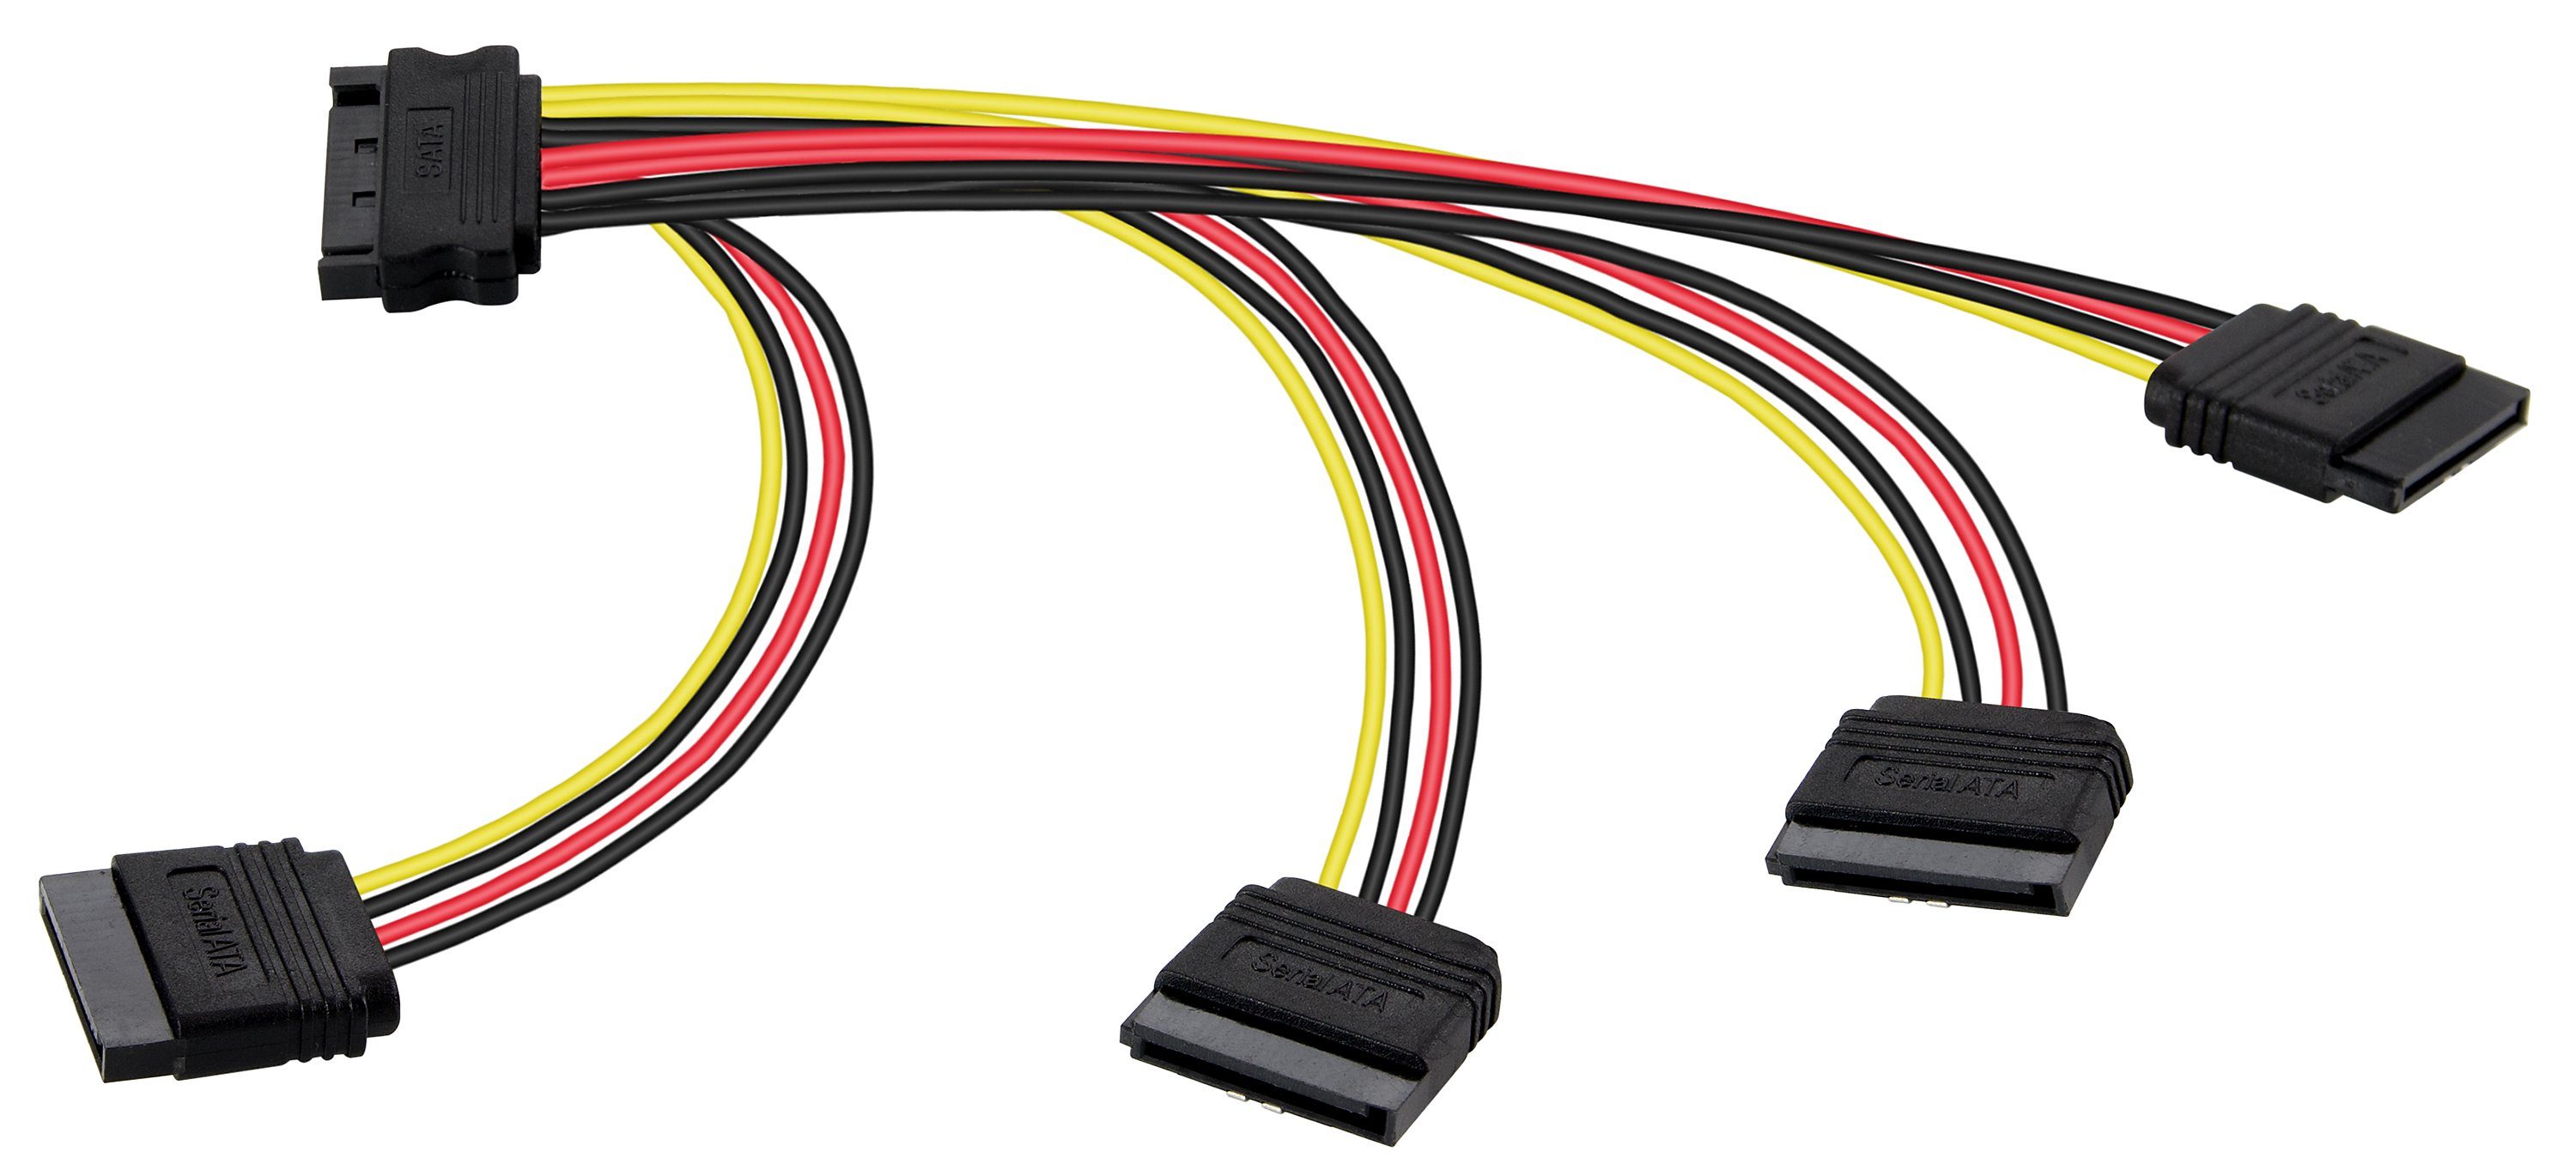 Poppstar SATA Stromkabel Verteiler 4-fach für HDD, SSD, Festplatte, Motherboard Stromkabel, Kabel Stromadapter 20cm 1x Stecker (m) auf 4x Buchse (w) Splitter gerade/gerade (20cm) | Stromversorgungskabel